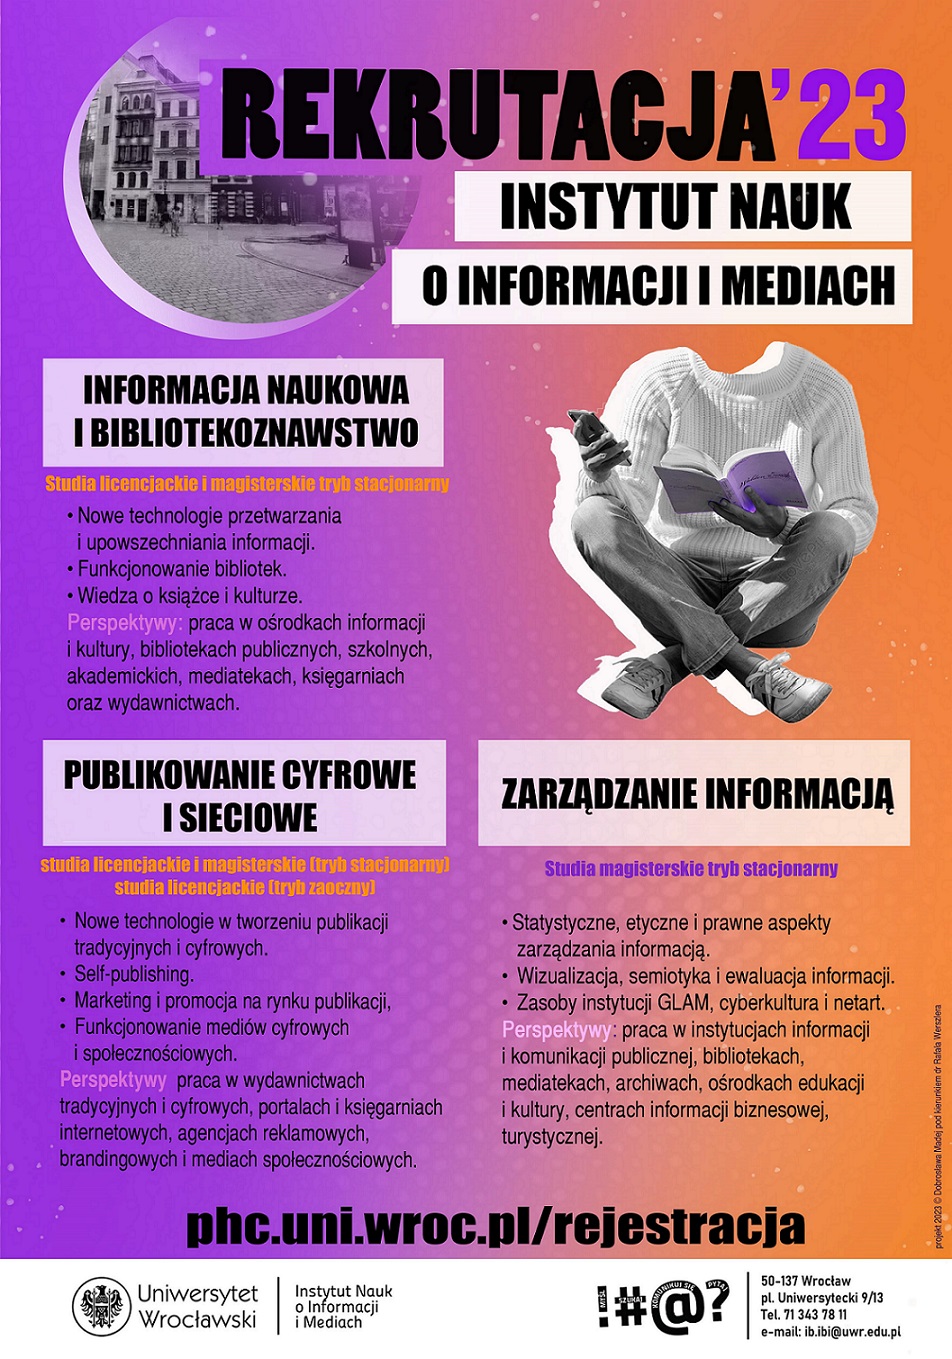 REKRUTACJA'23. Instytut Nauk o Informacji i Mediach Uniwersytetu Wrocławskiego. Plakat promujący kierunki: publikowanie cyfrowe i sieciowe, informacja naukowa i bibliotekoznawstwo, zarządzanie informacją. 